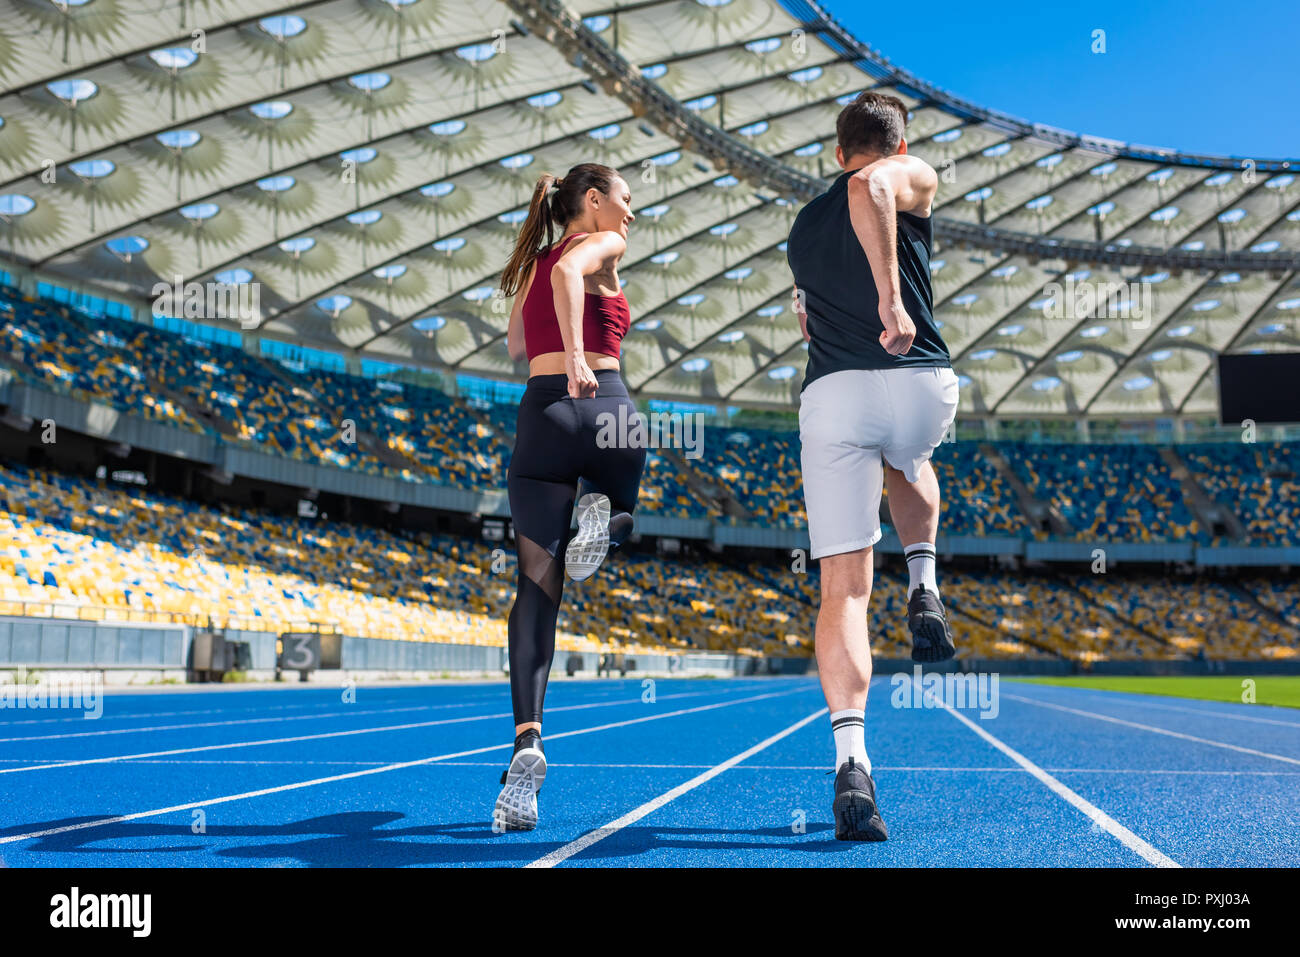 Vue arrière du jeune homme et femme joggers tournant sur la voie au stade de sport Banque D'Images